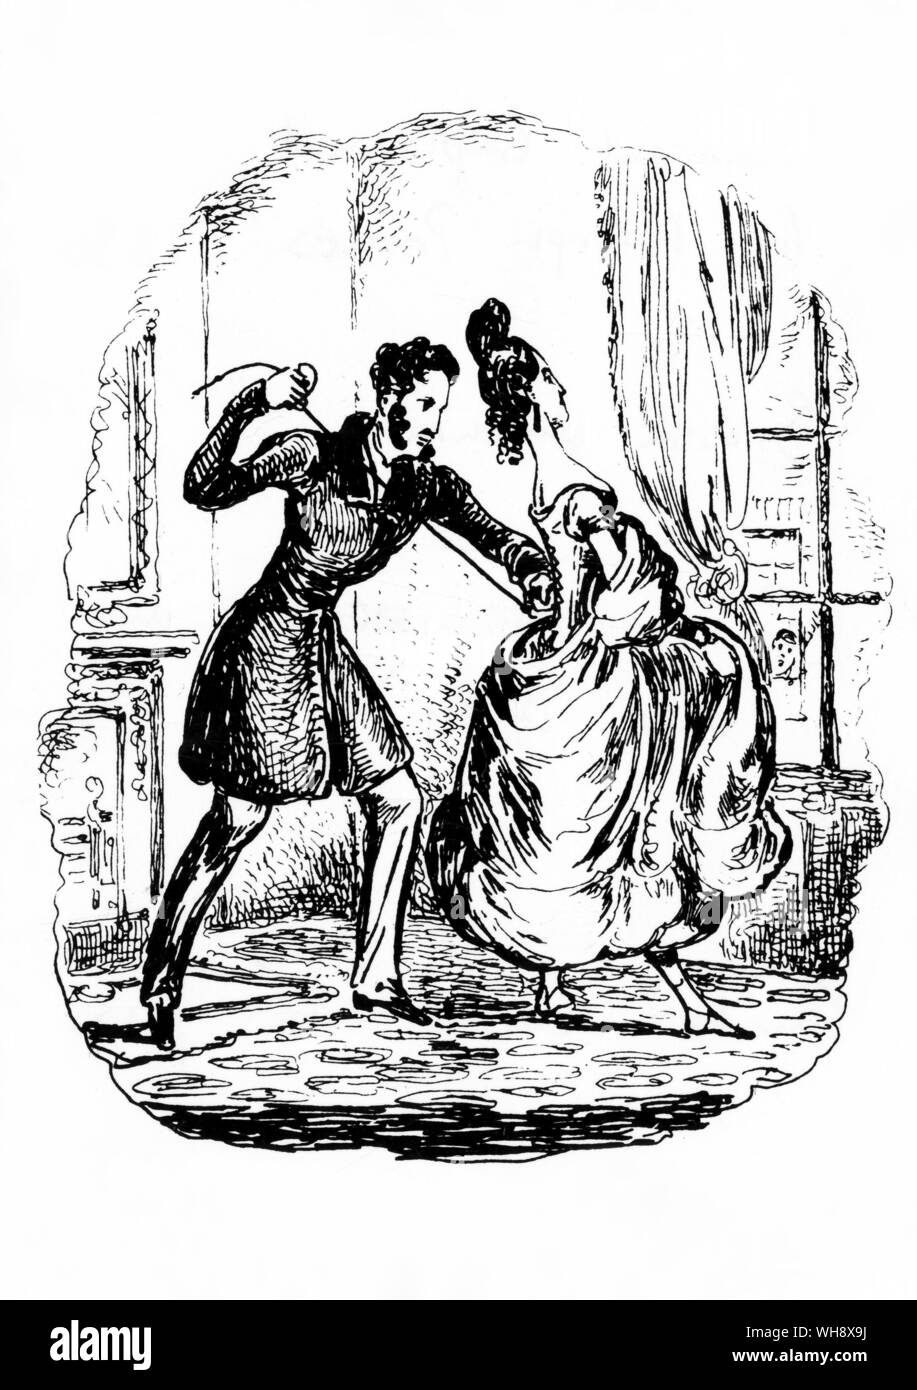 Unschuldige Beschäftigung für ausländische Fürsten'. Zeitung Cartoon, 1830. Stockfoto